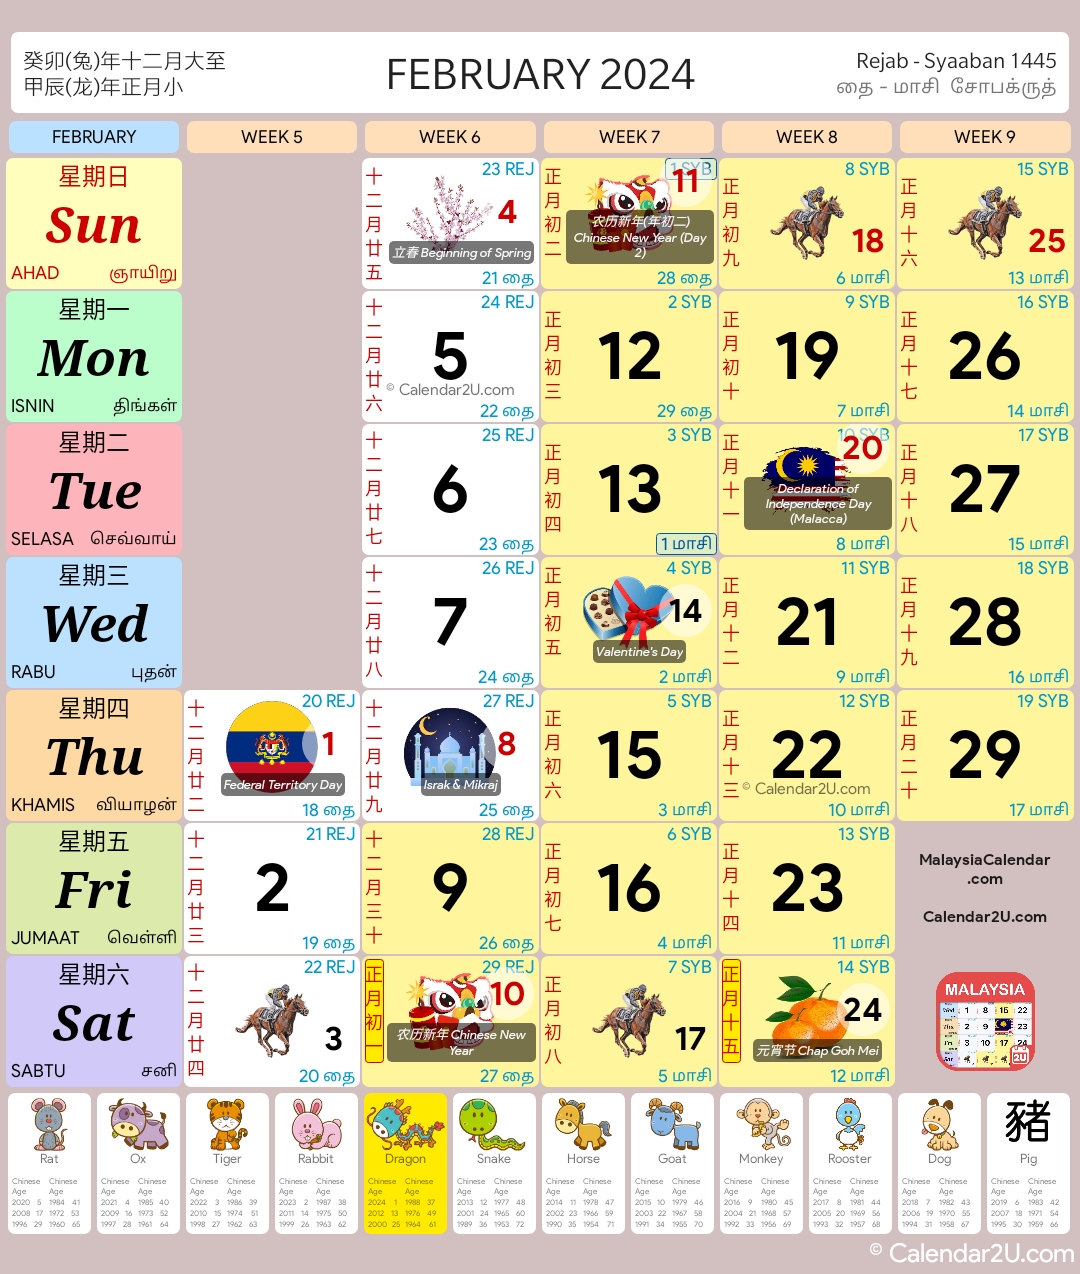 马来西亚 (Malaysia) Calendar